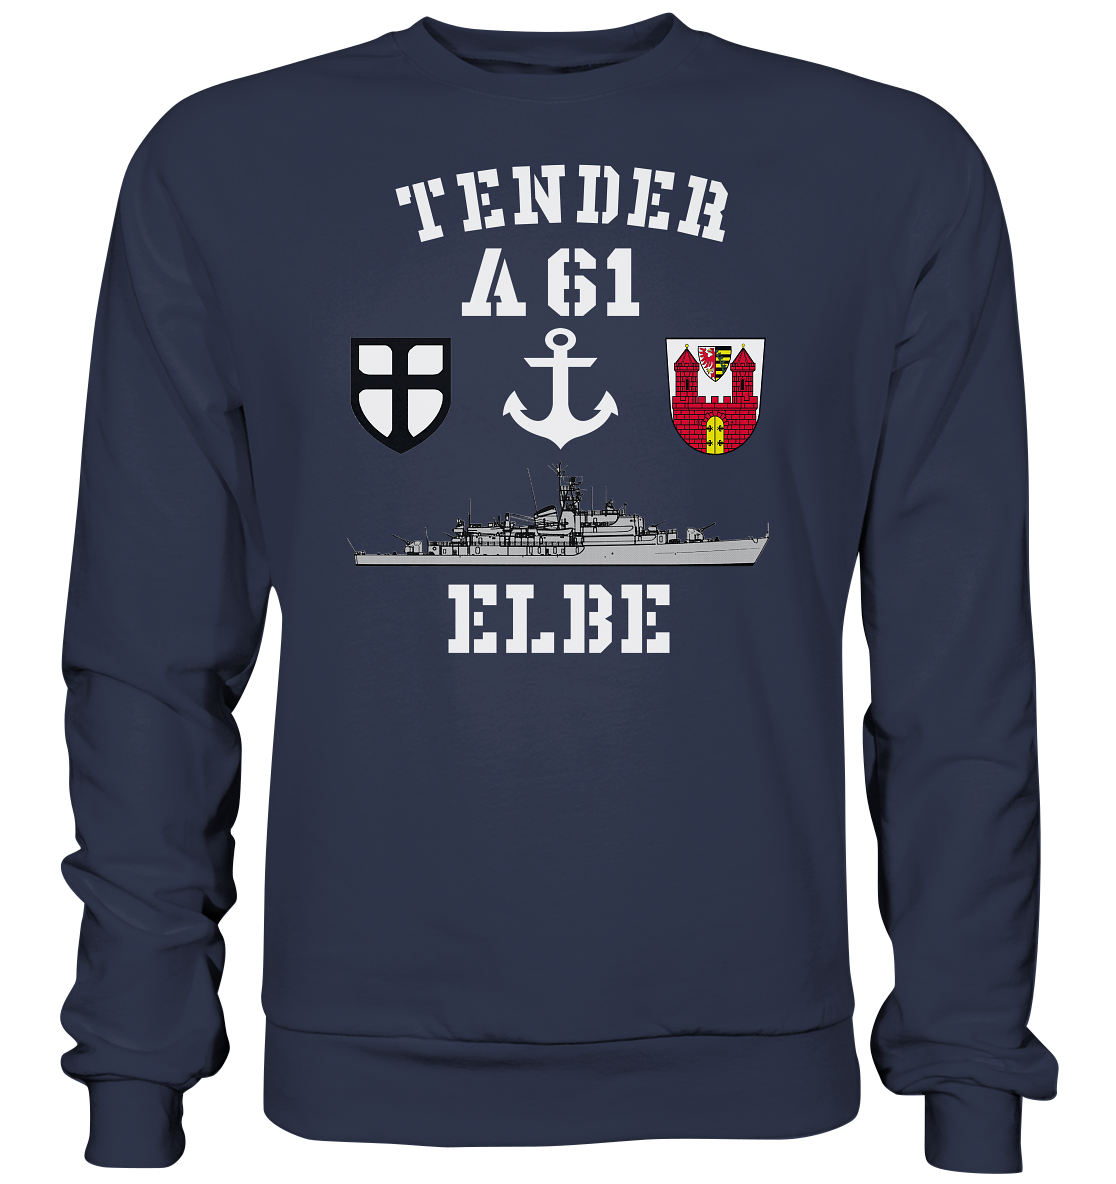 Tender A61 ELBE 7.SG ANKER - Premium Sweatshirt